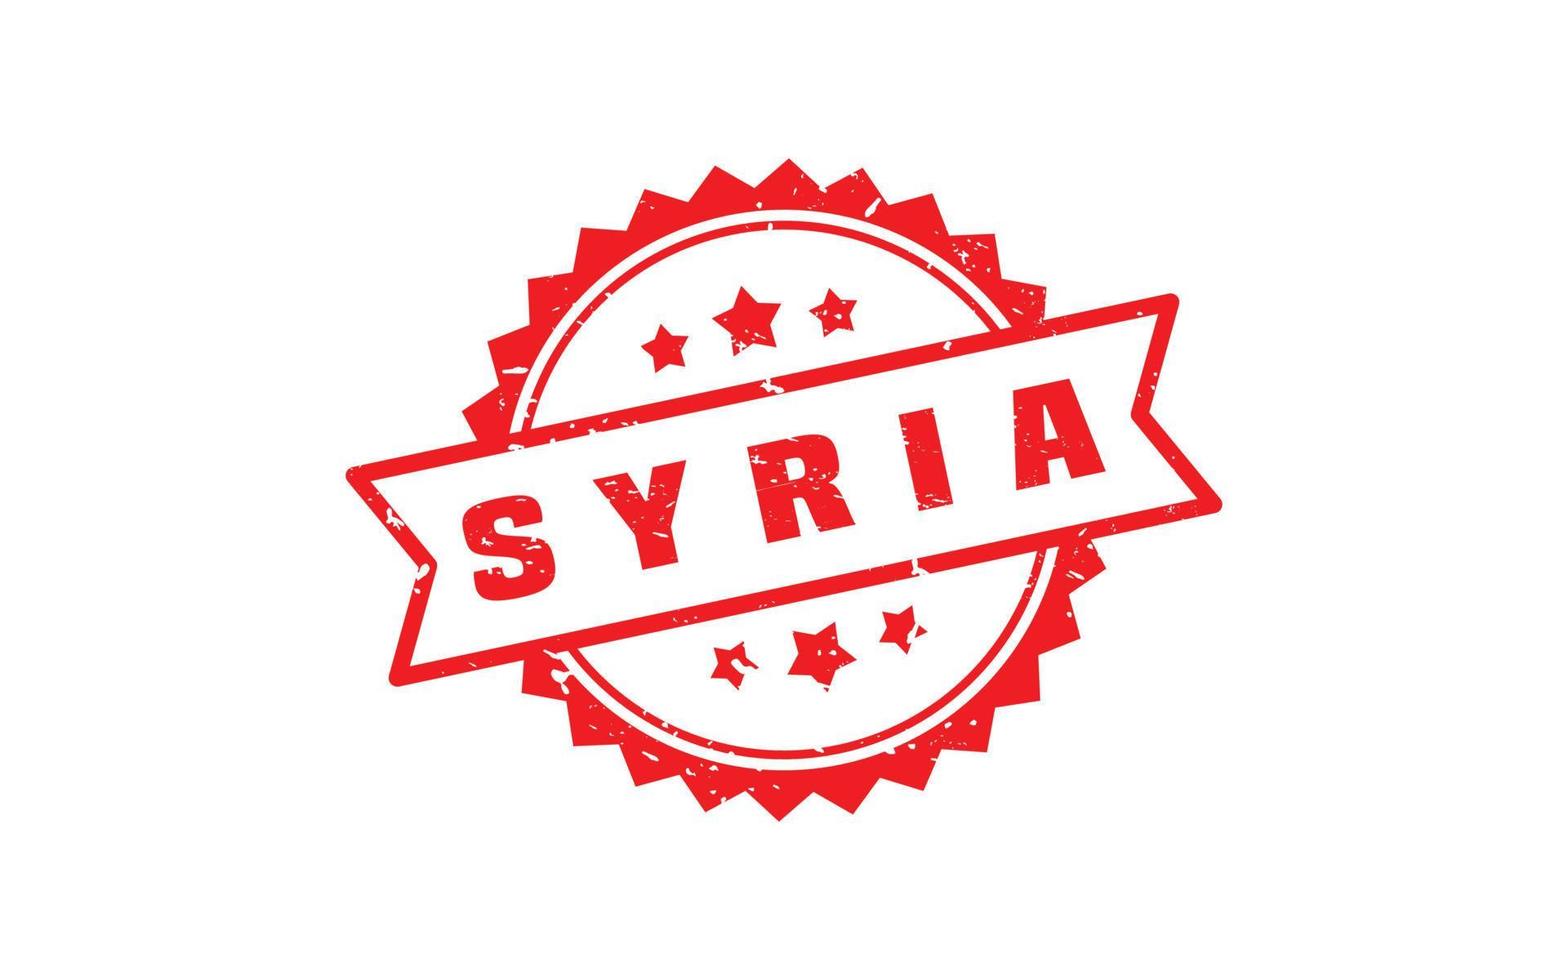 Siria sello caucho con grunge estilo en blanco antecedentes vector